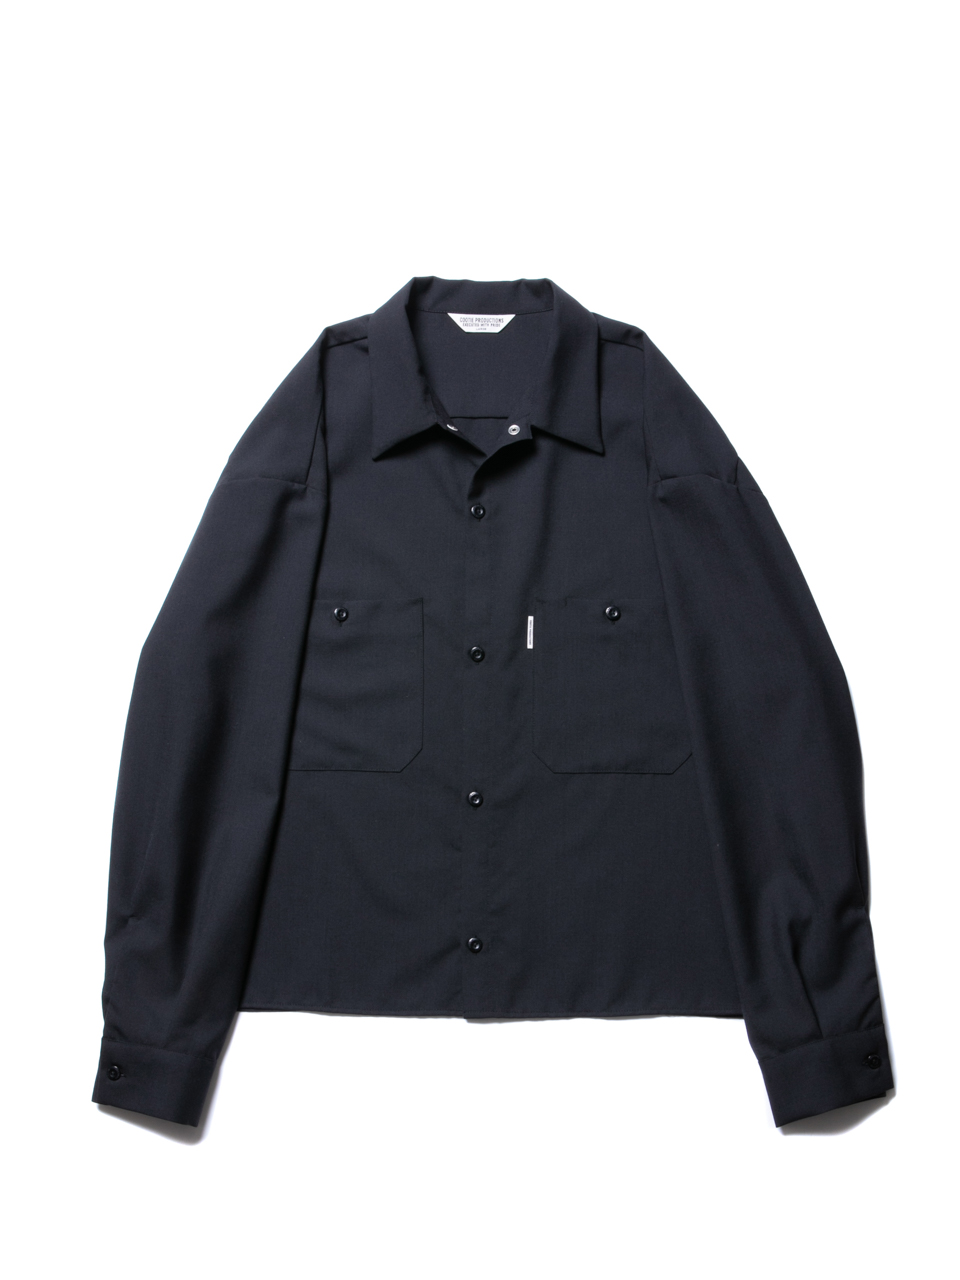 COOTIE / T/W Work L/S Shirt -Black- (CTE-20S401) | 80-HACHIMARU-